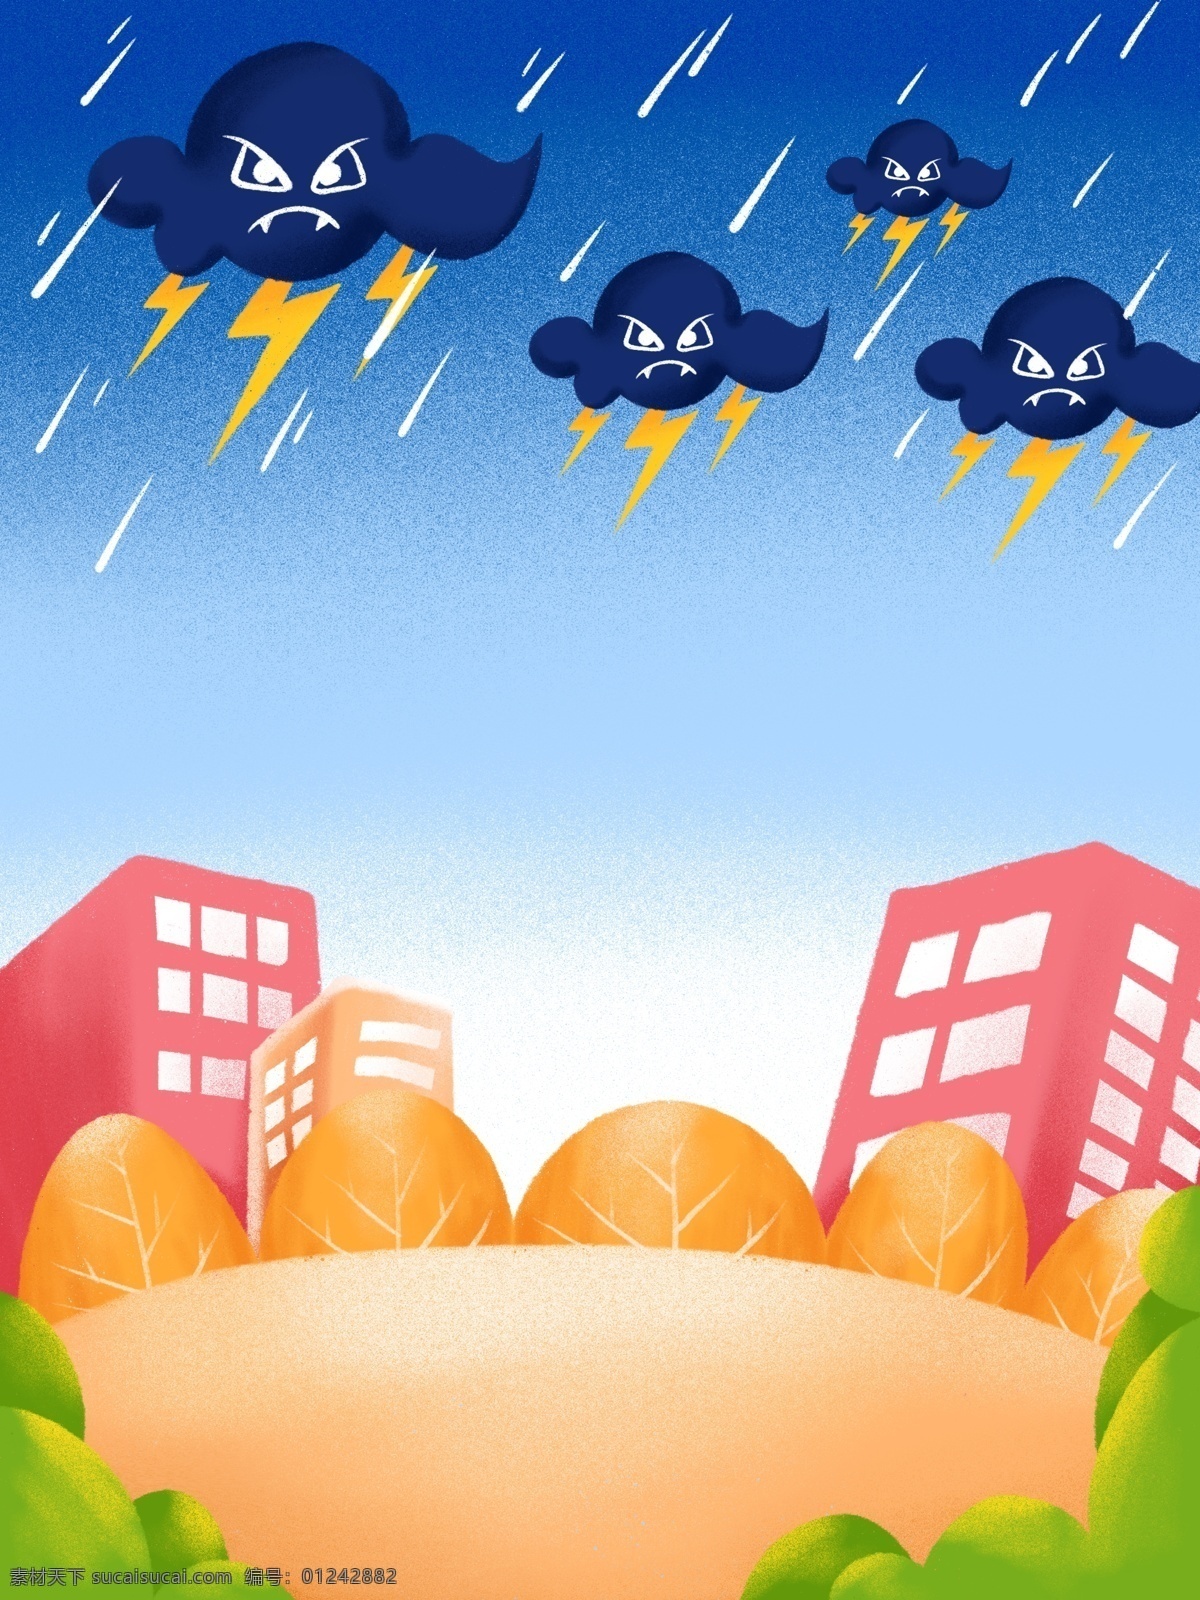 手绘 城市 雷雨 背景 小鸟 建筑 广告背景 背景图 创意 下雨 背景设计 彩绘背景 psd背景 特邀背景